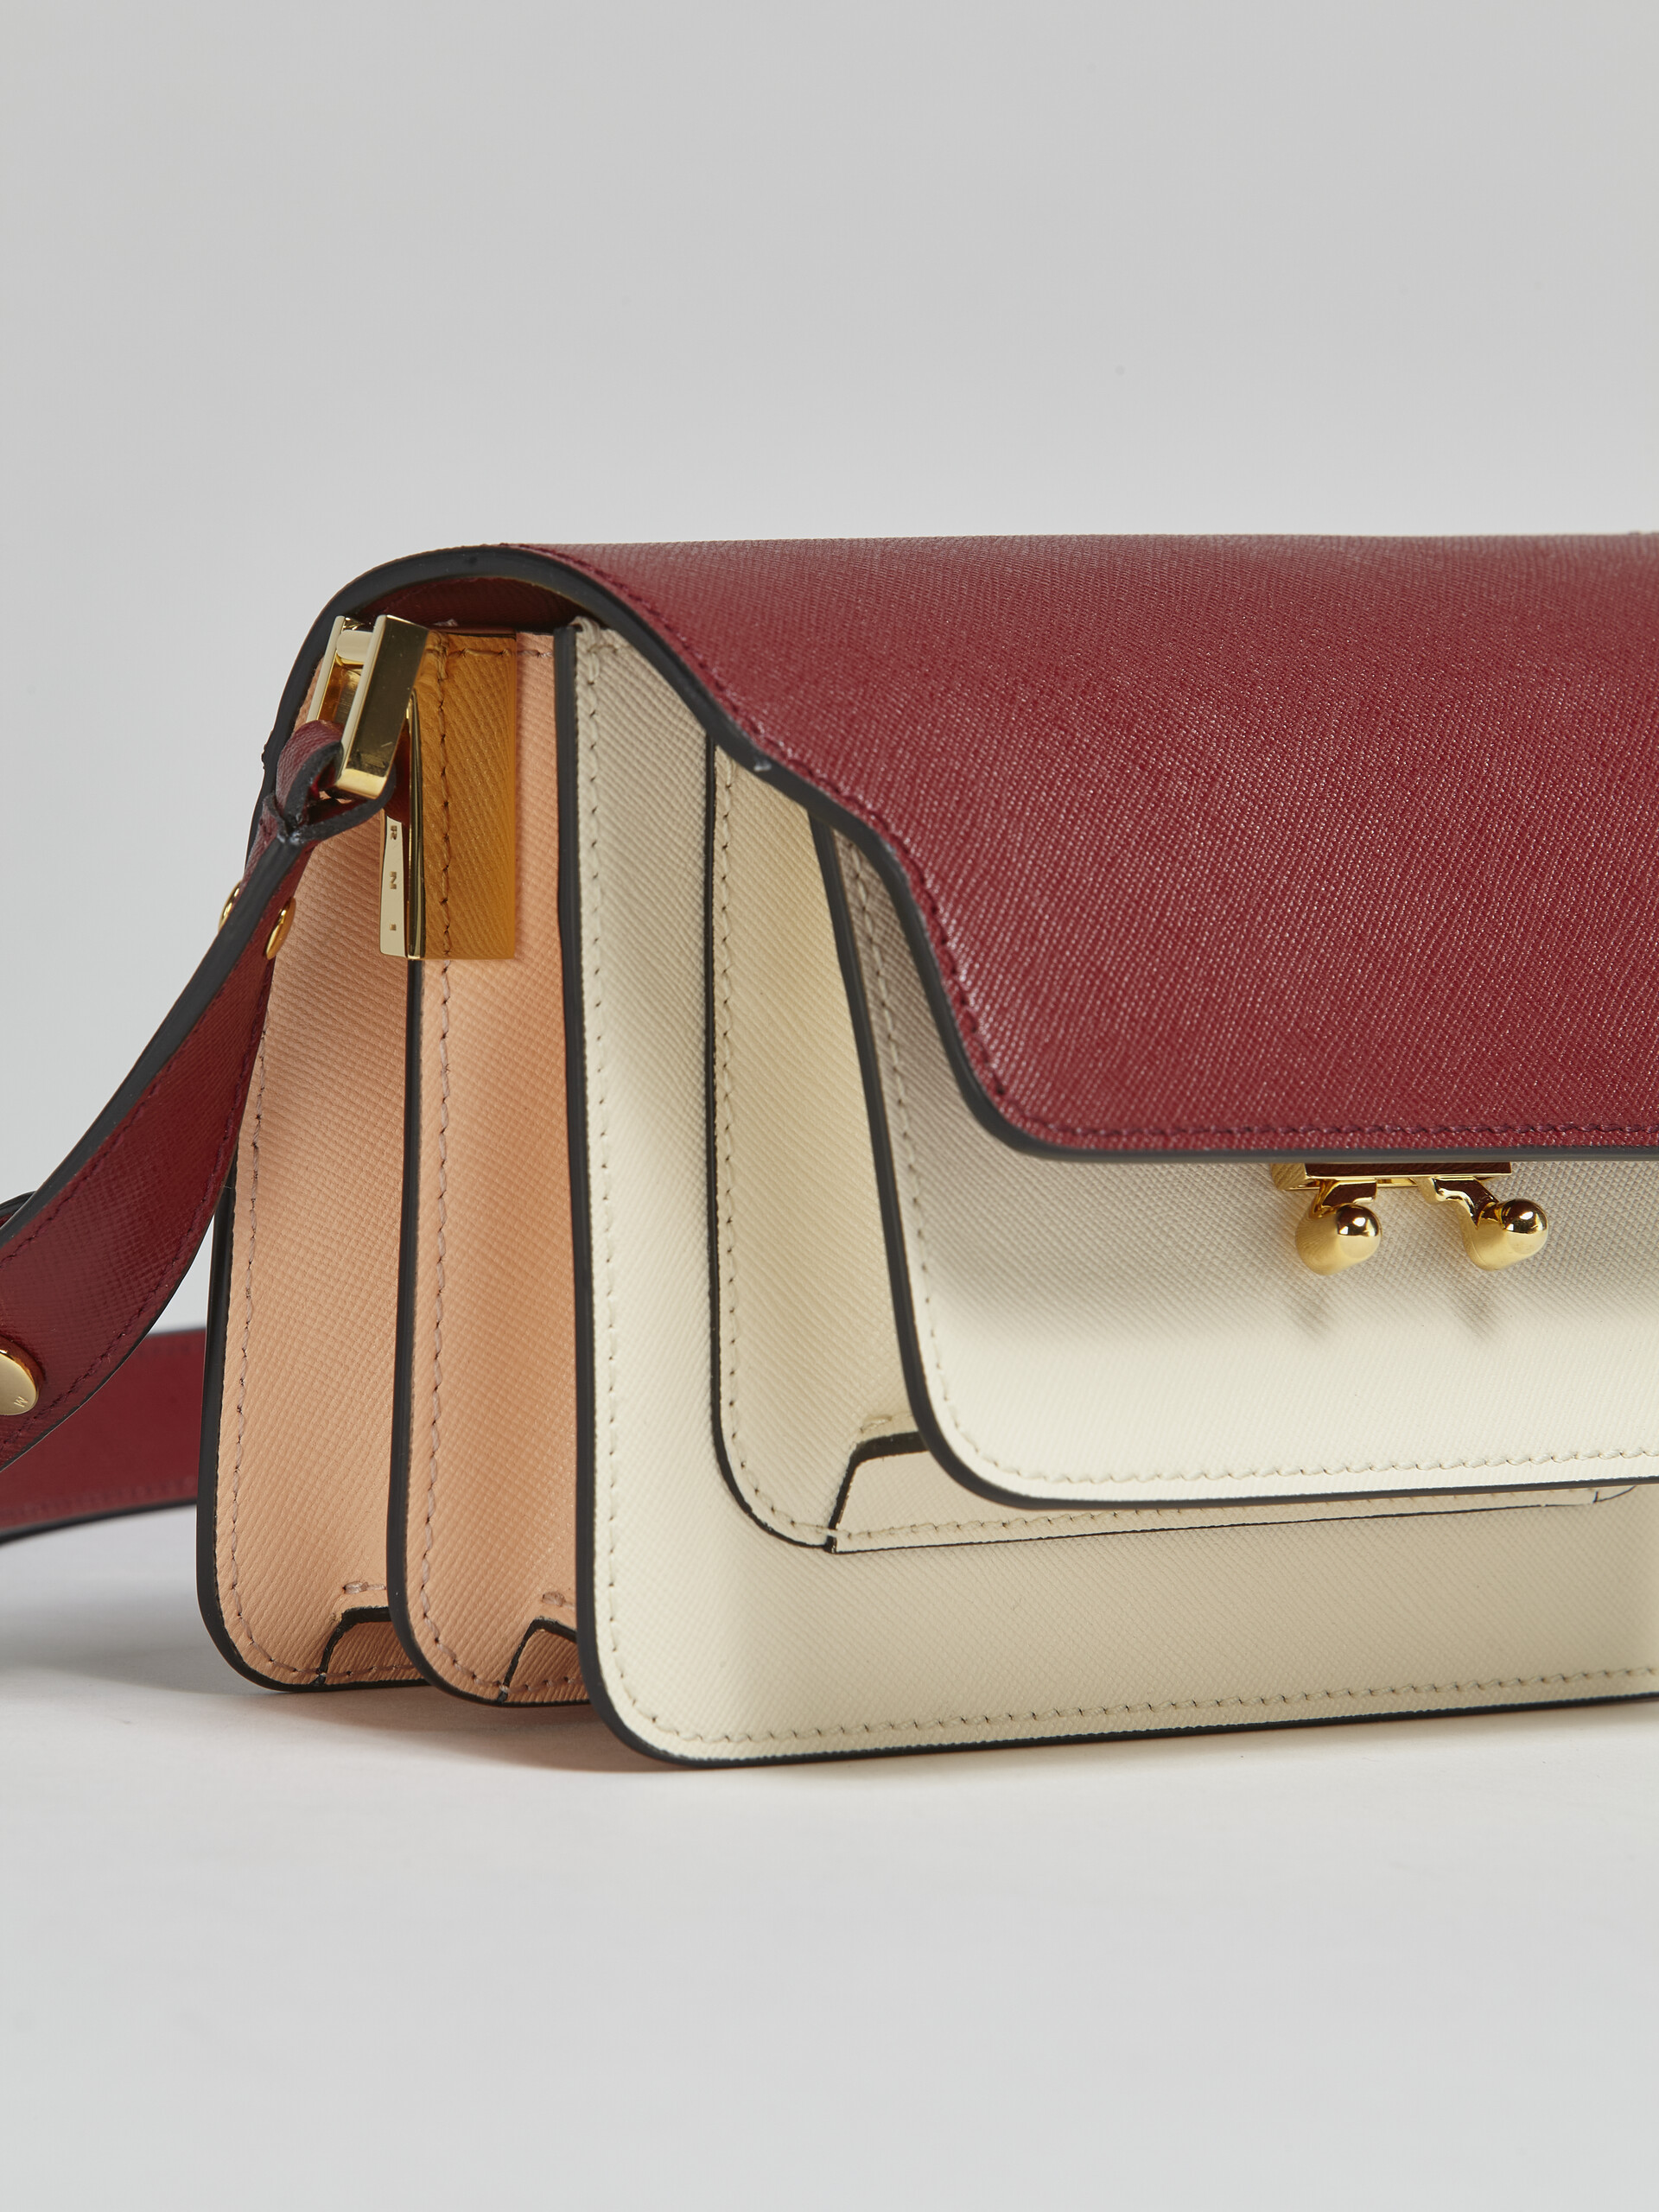 Mini-sac porté épaule TRUNK de taille moyenne en cuir saffiano rouge multicolore - Sacs portés épaule - Image 4